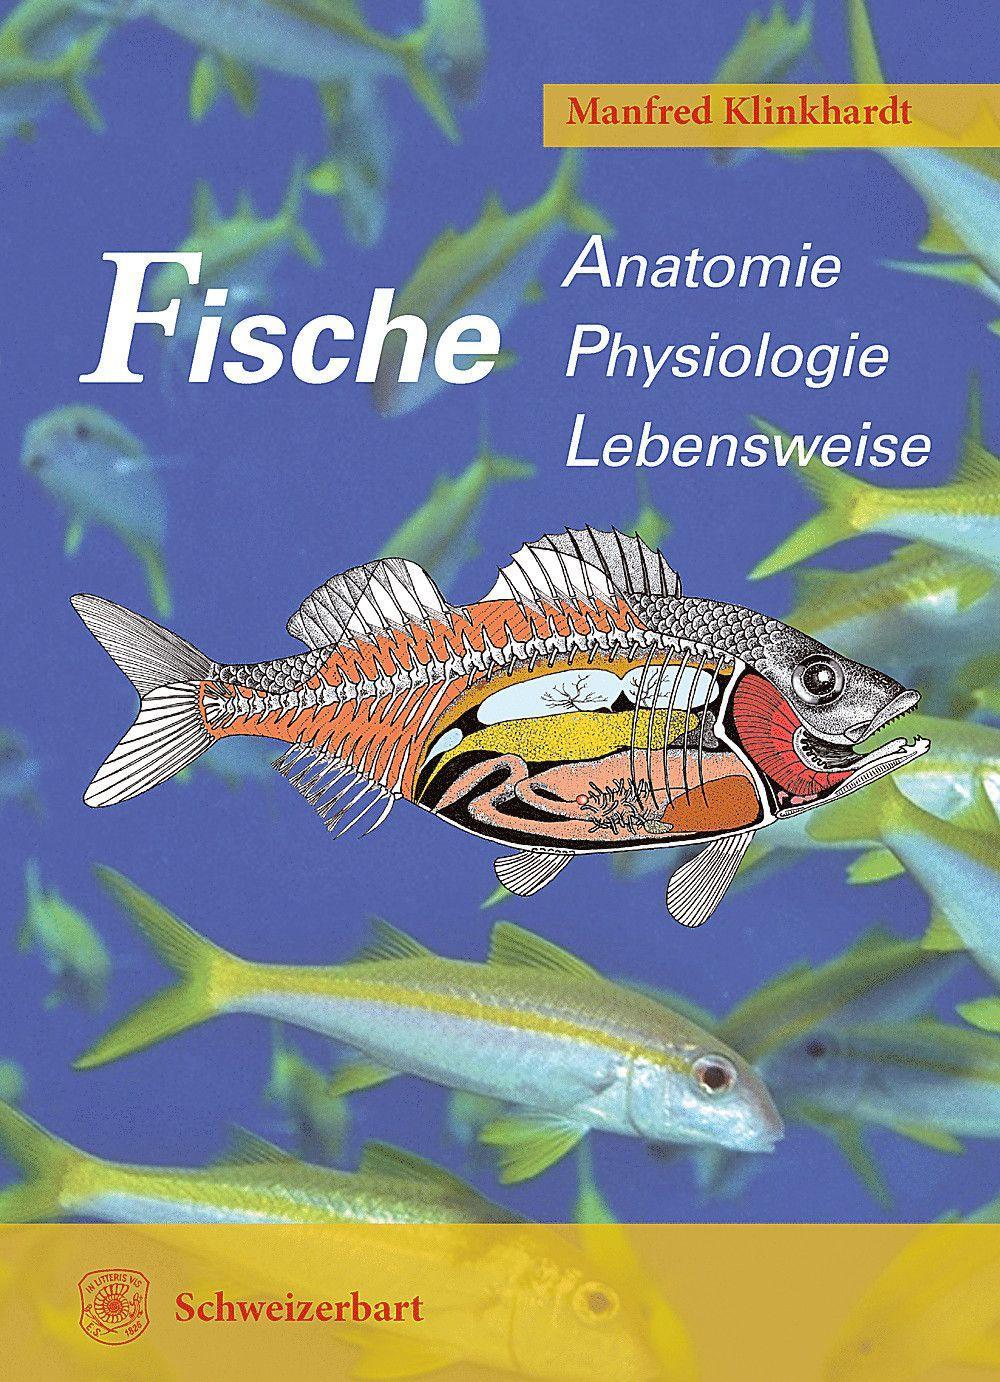 Fische Anatomie, Physiologie, Lebensweise